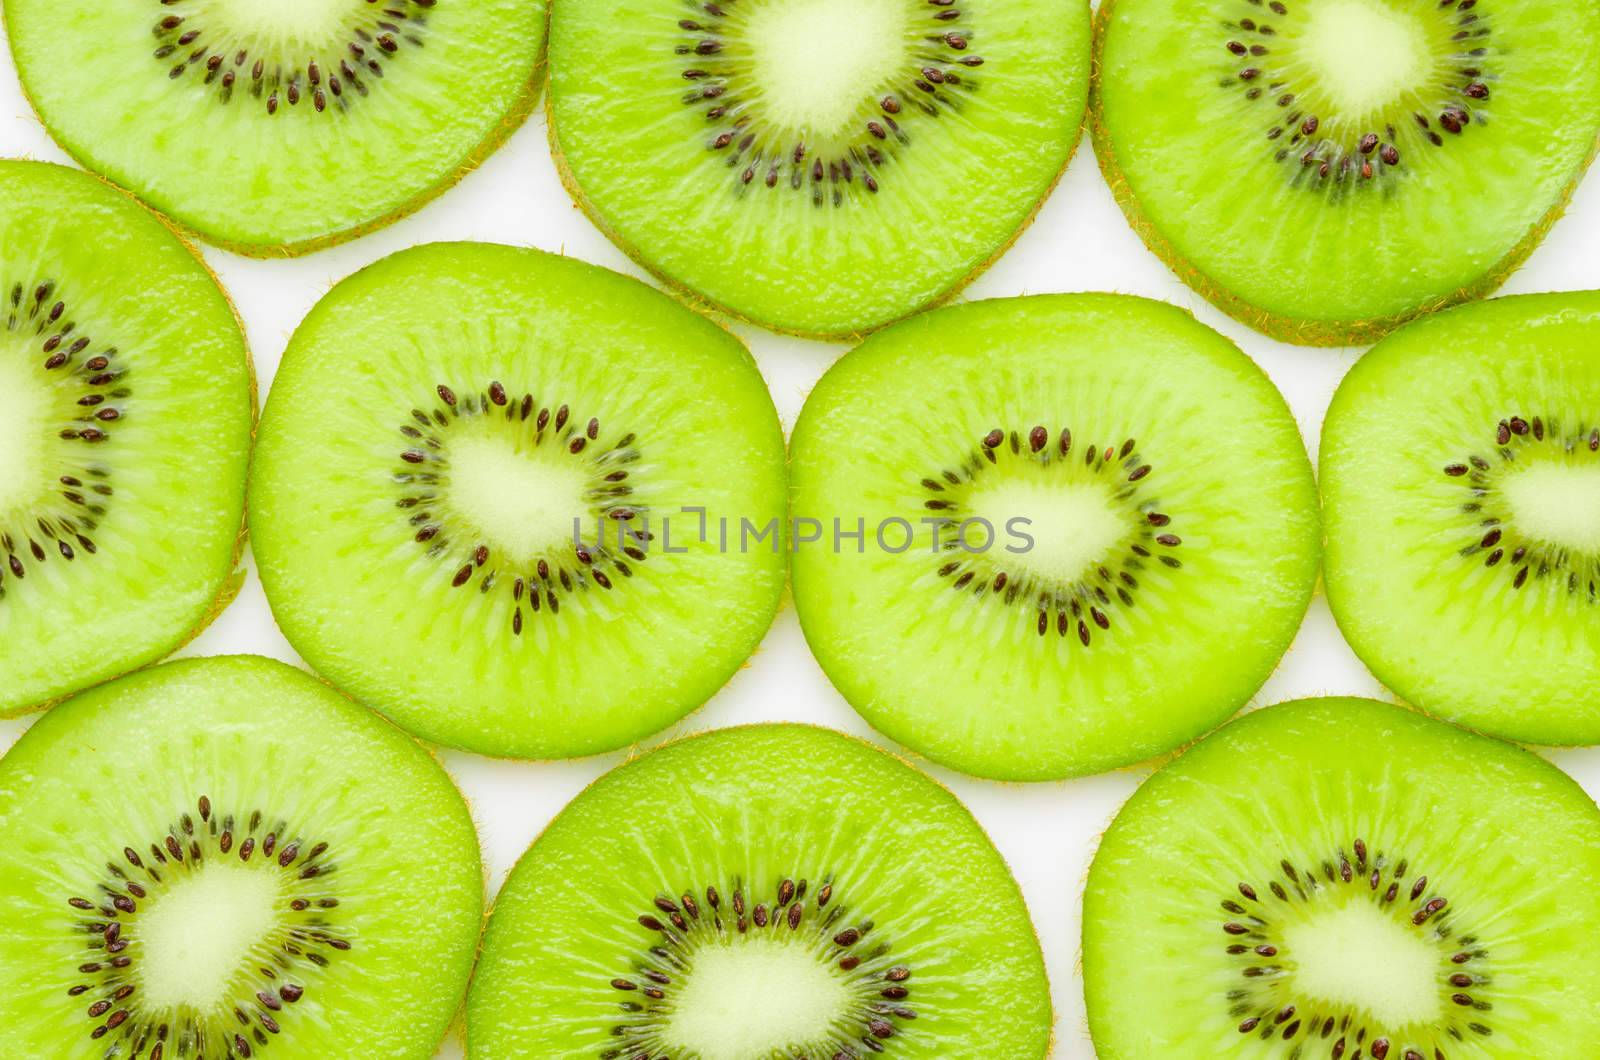 Fresh organic Kiwi fruit slices on white background.